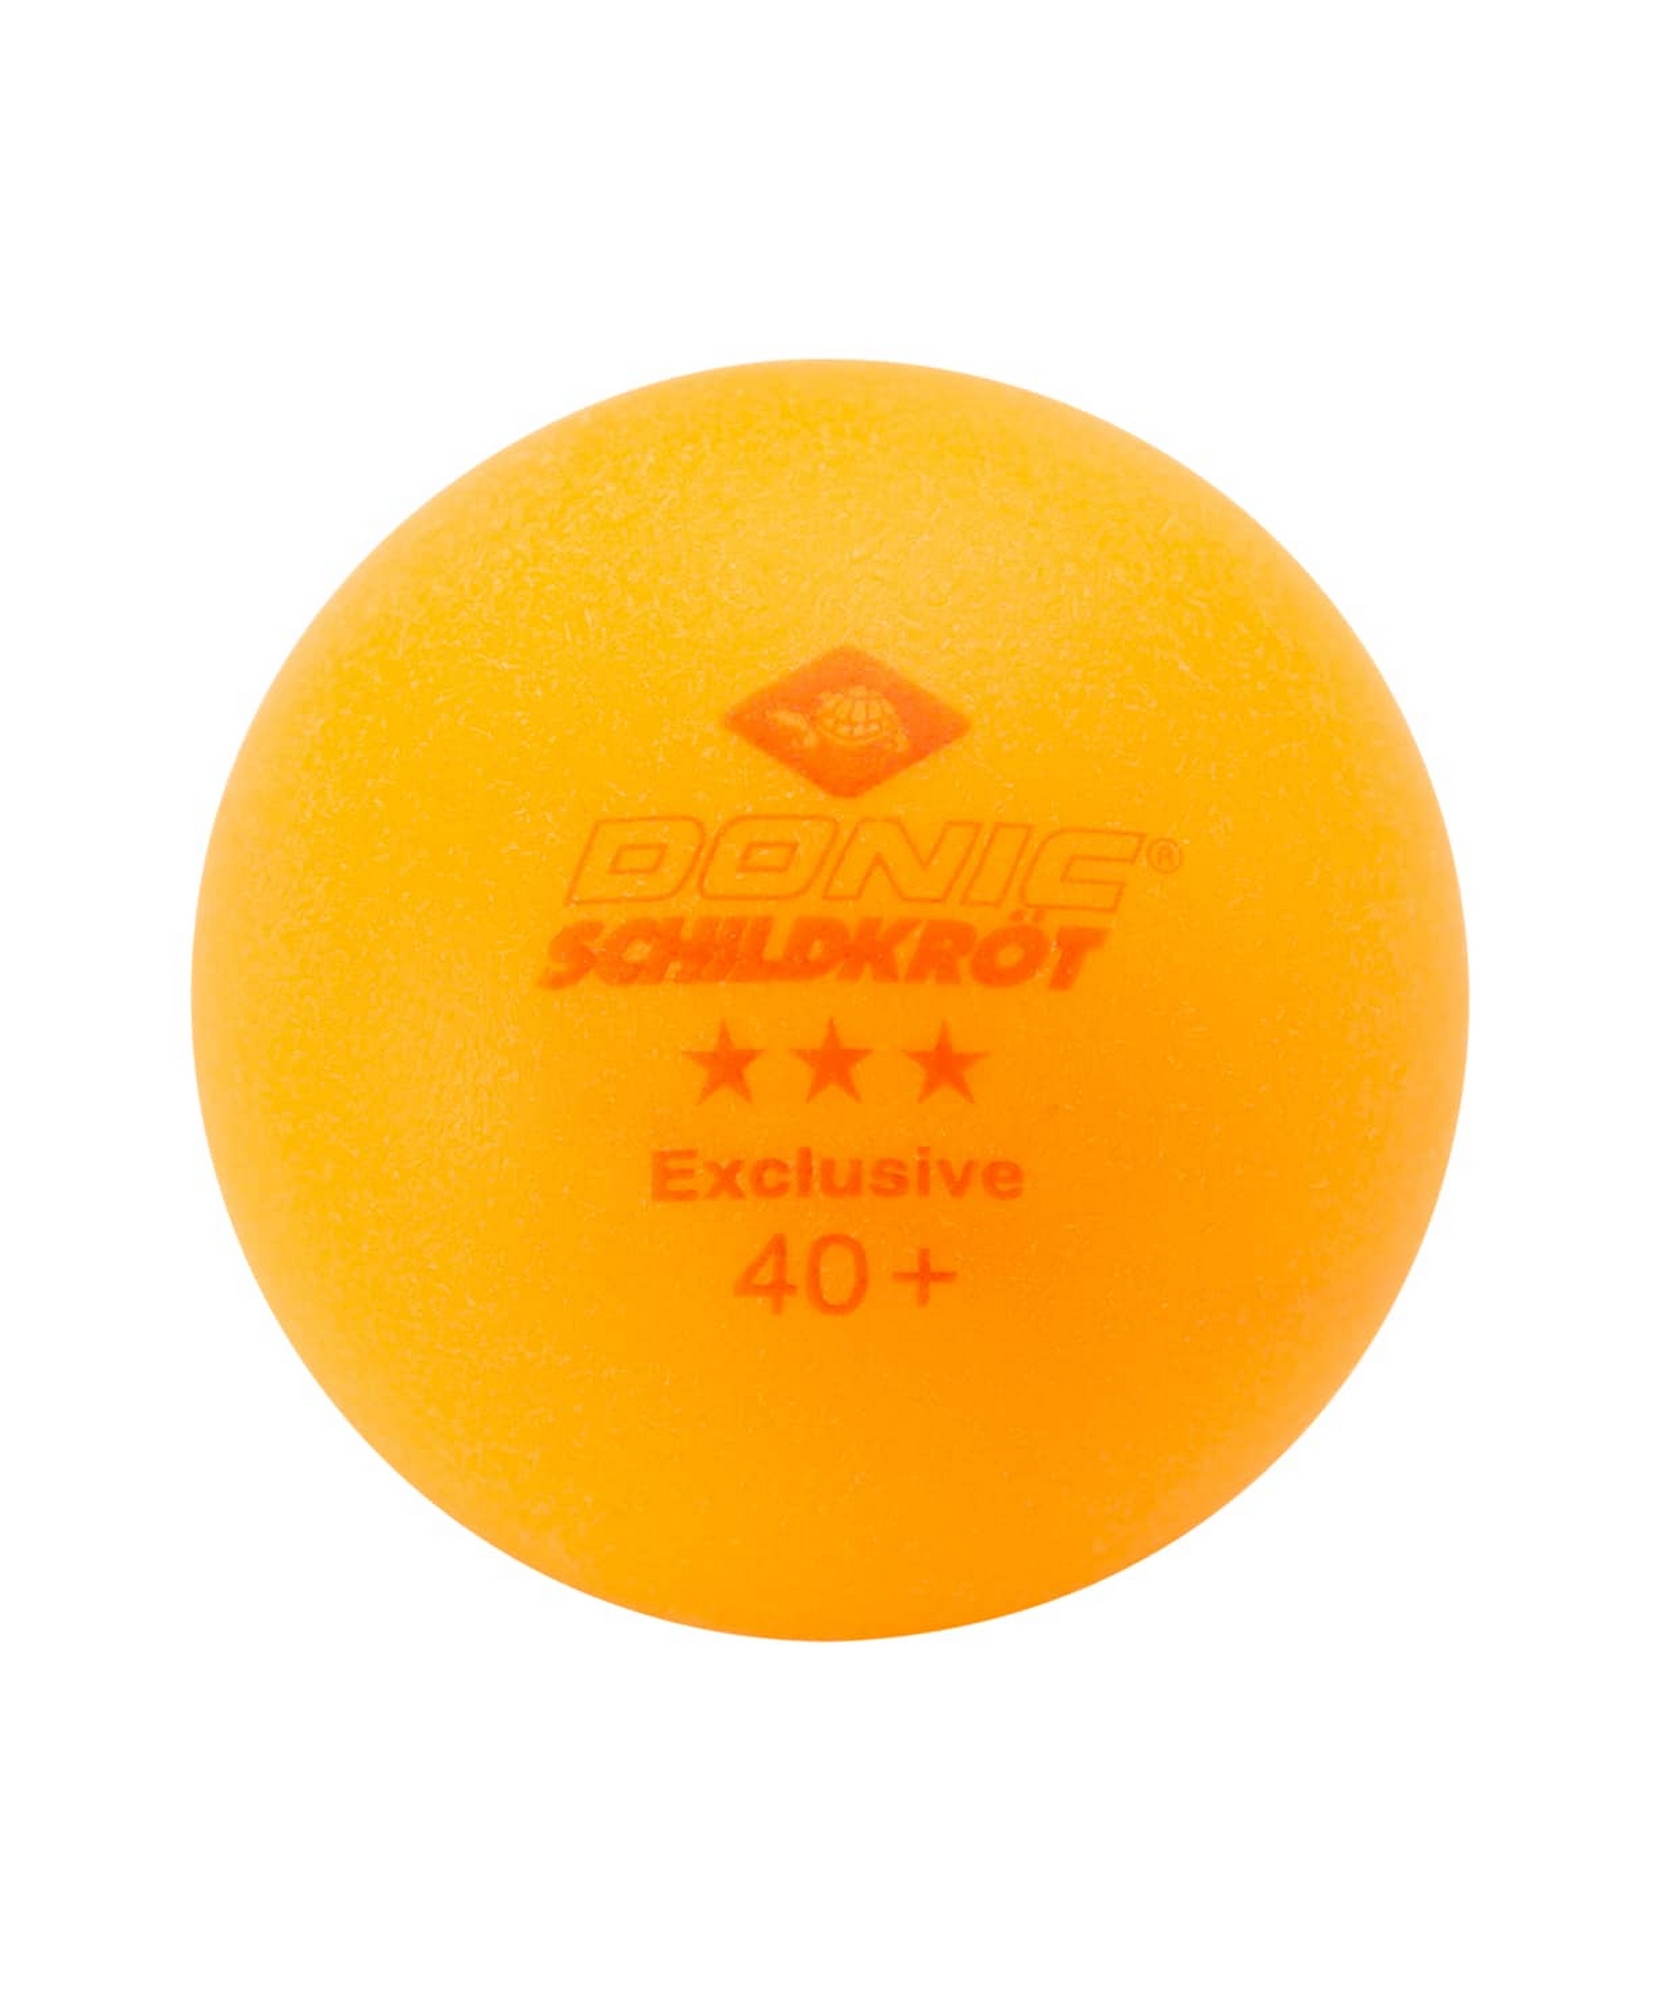 Мяч для настольного тенниса Donic 3* Exclusive, 6 шт оранжевый 1663_2000